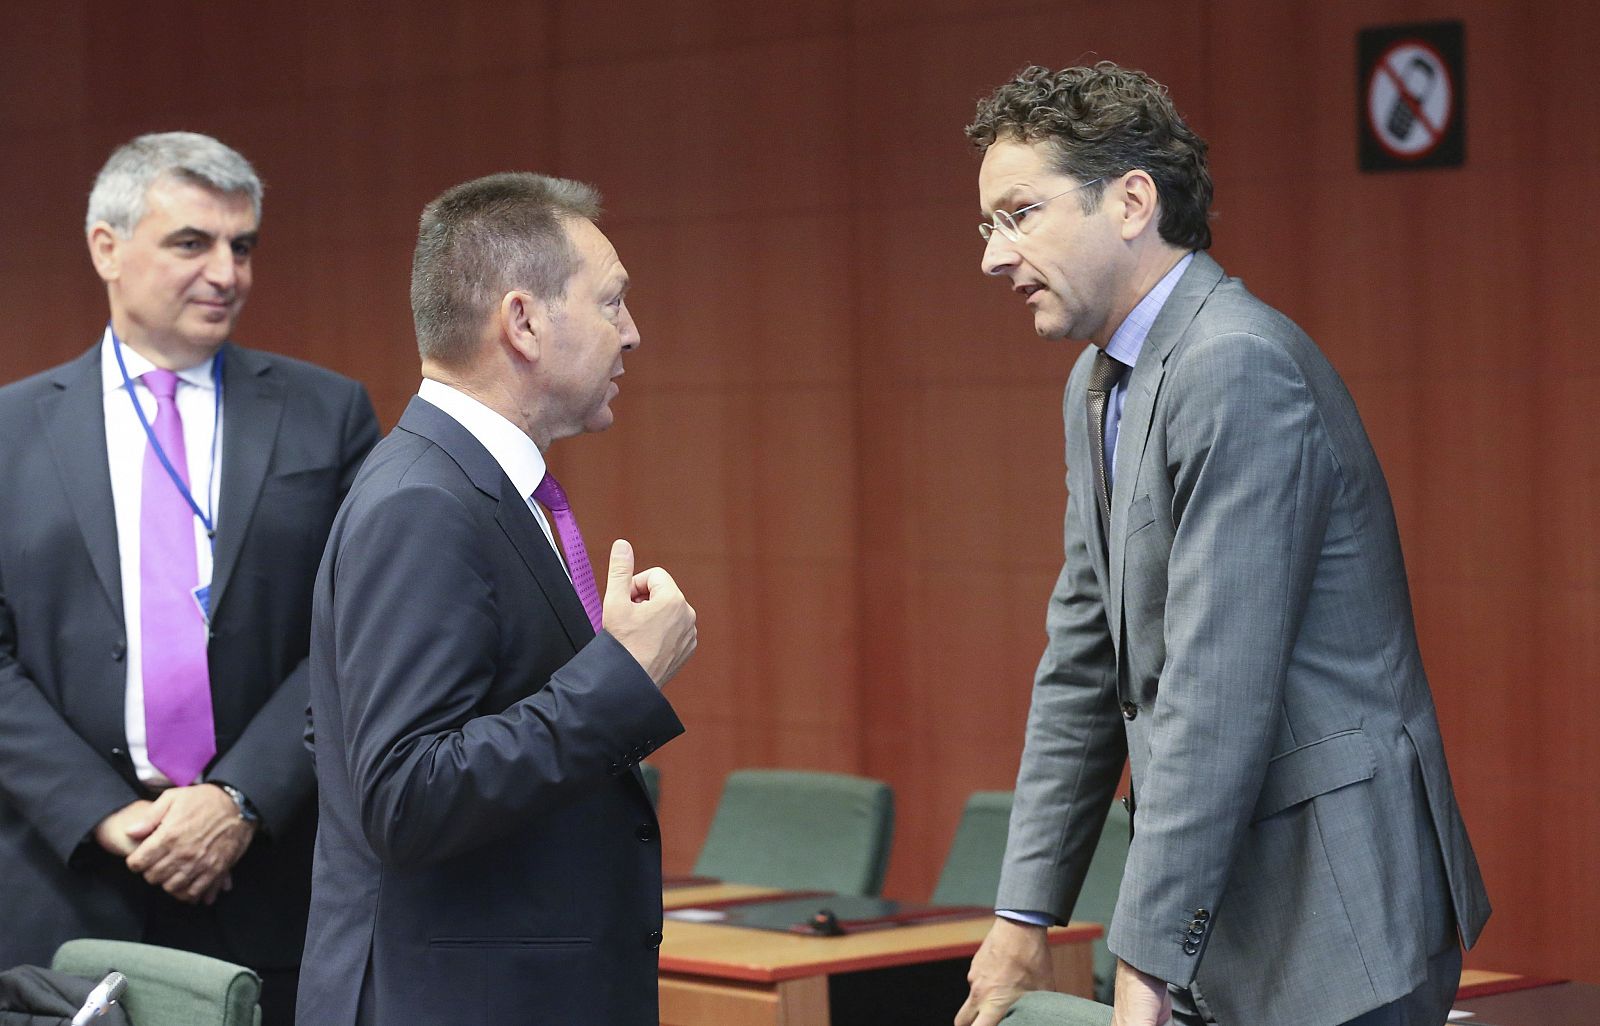 El ministro de Economía holandés y presidente del Eurogrupo, Jeroen Dijsselbloem, conversa con el ministro griego de Finanzas, Yannis Stournaras